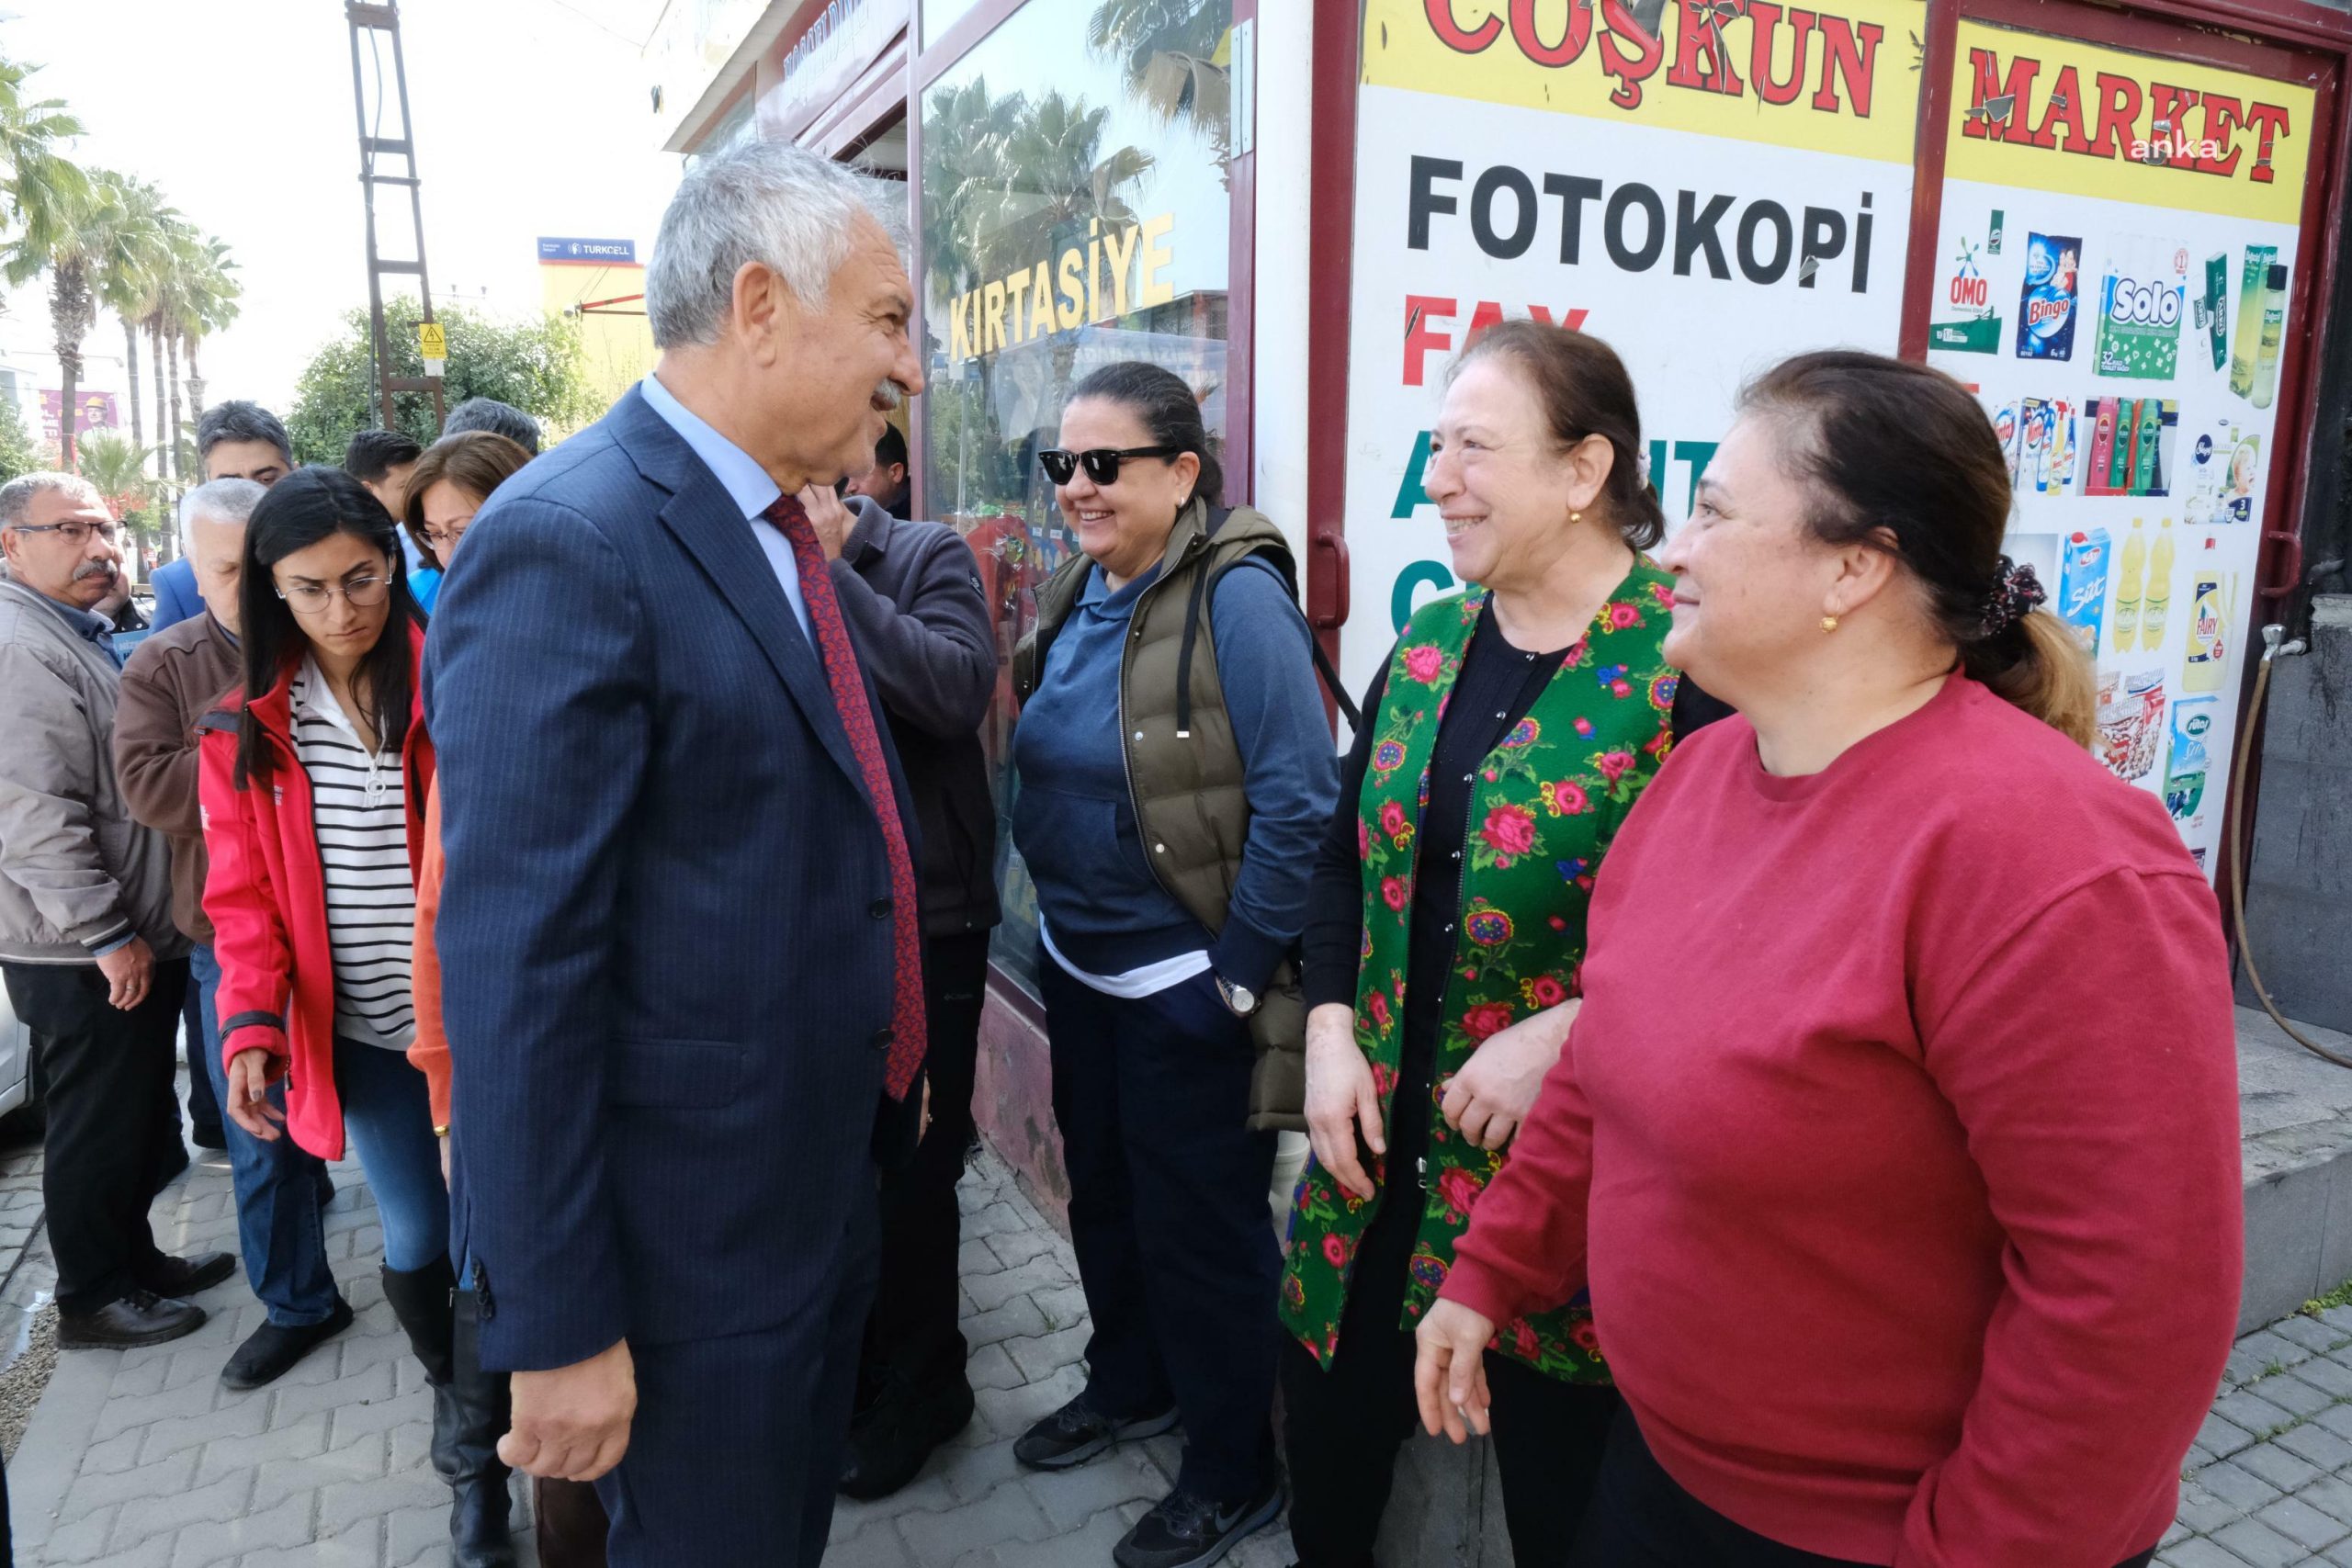 Adana Büyükşehir Belediye Başkanı Karalar: Siyaset bizi ayıramaz, bizi kimse bölemez